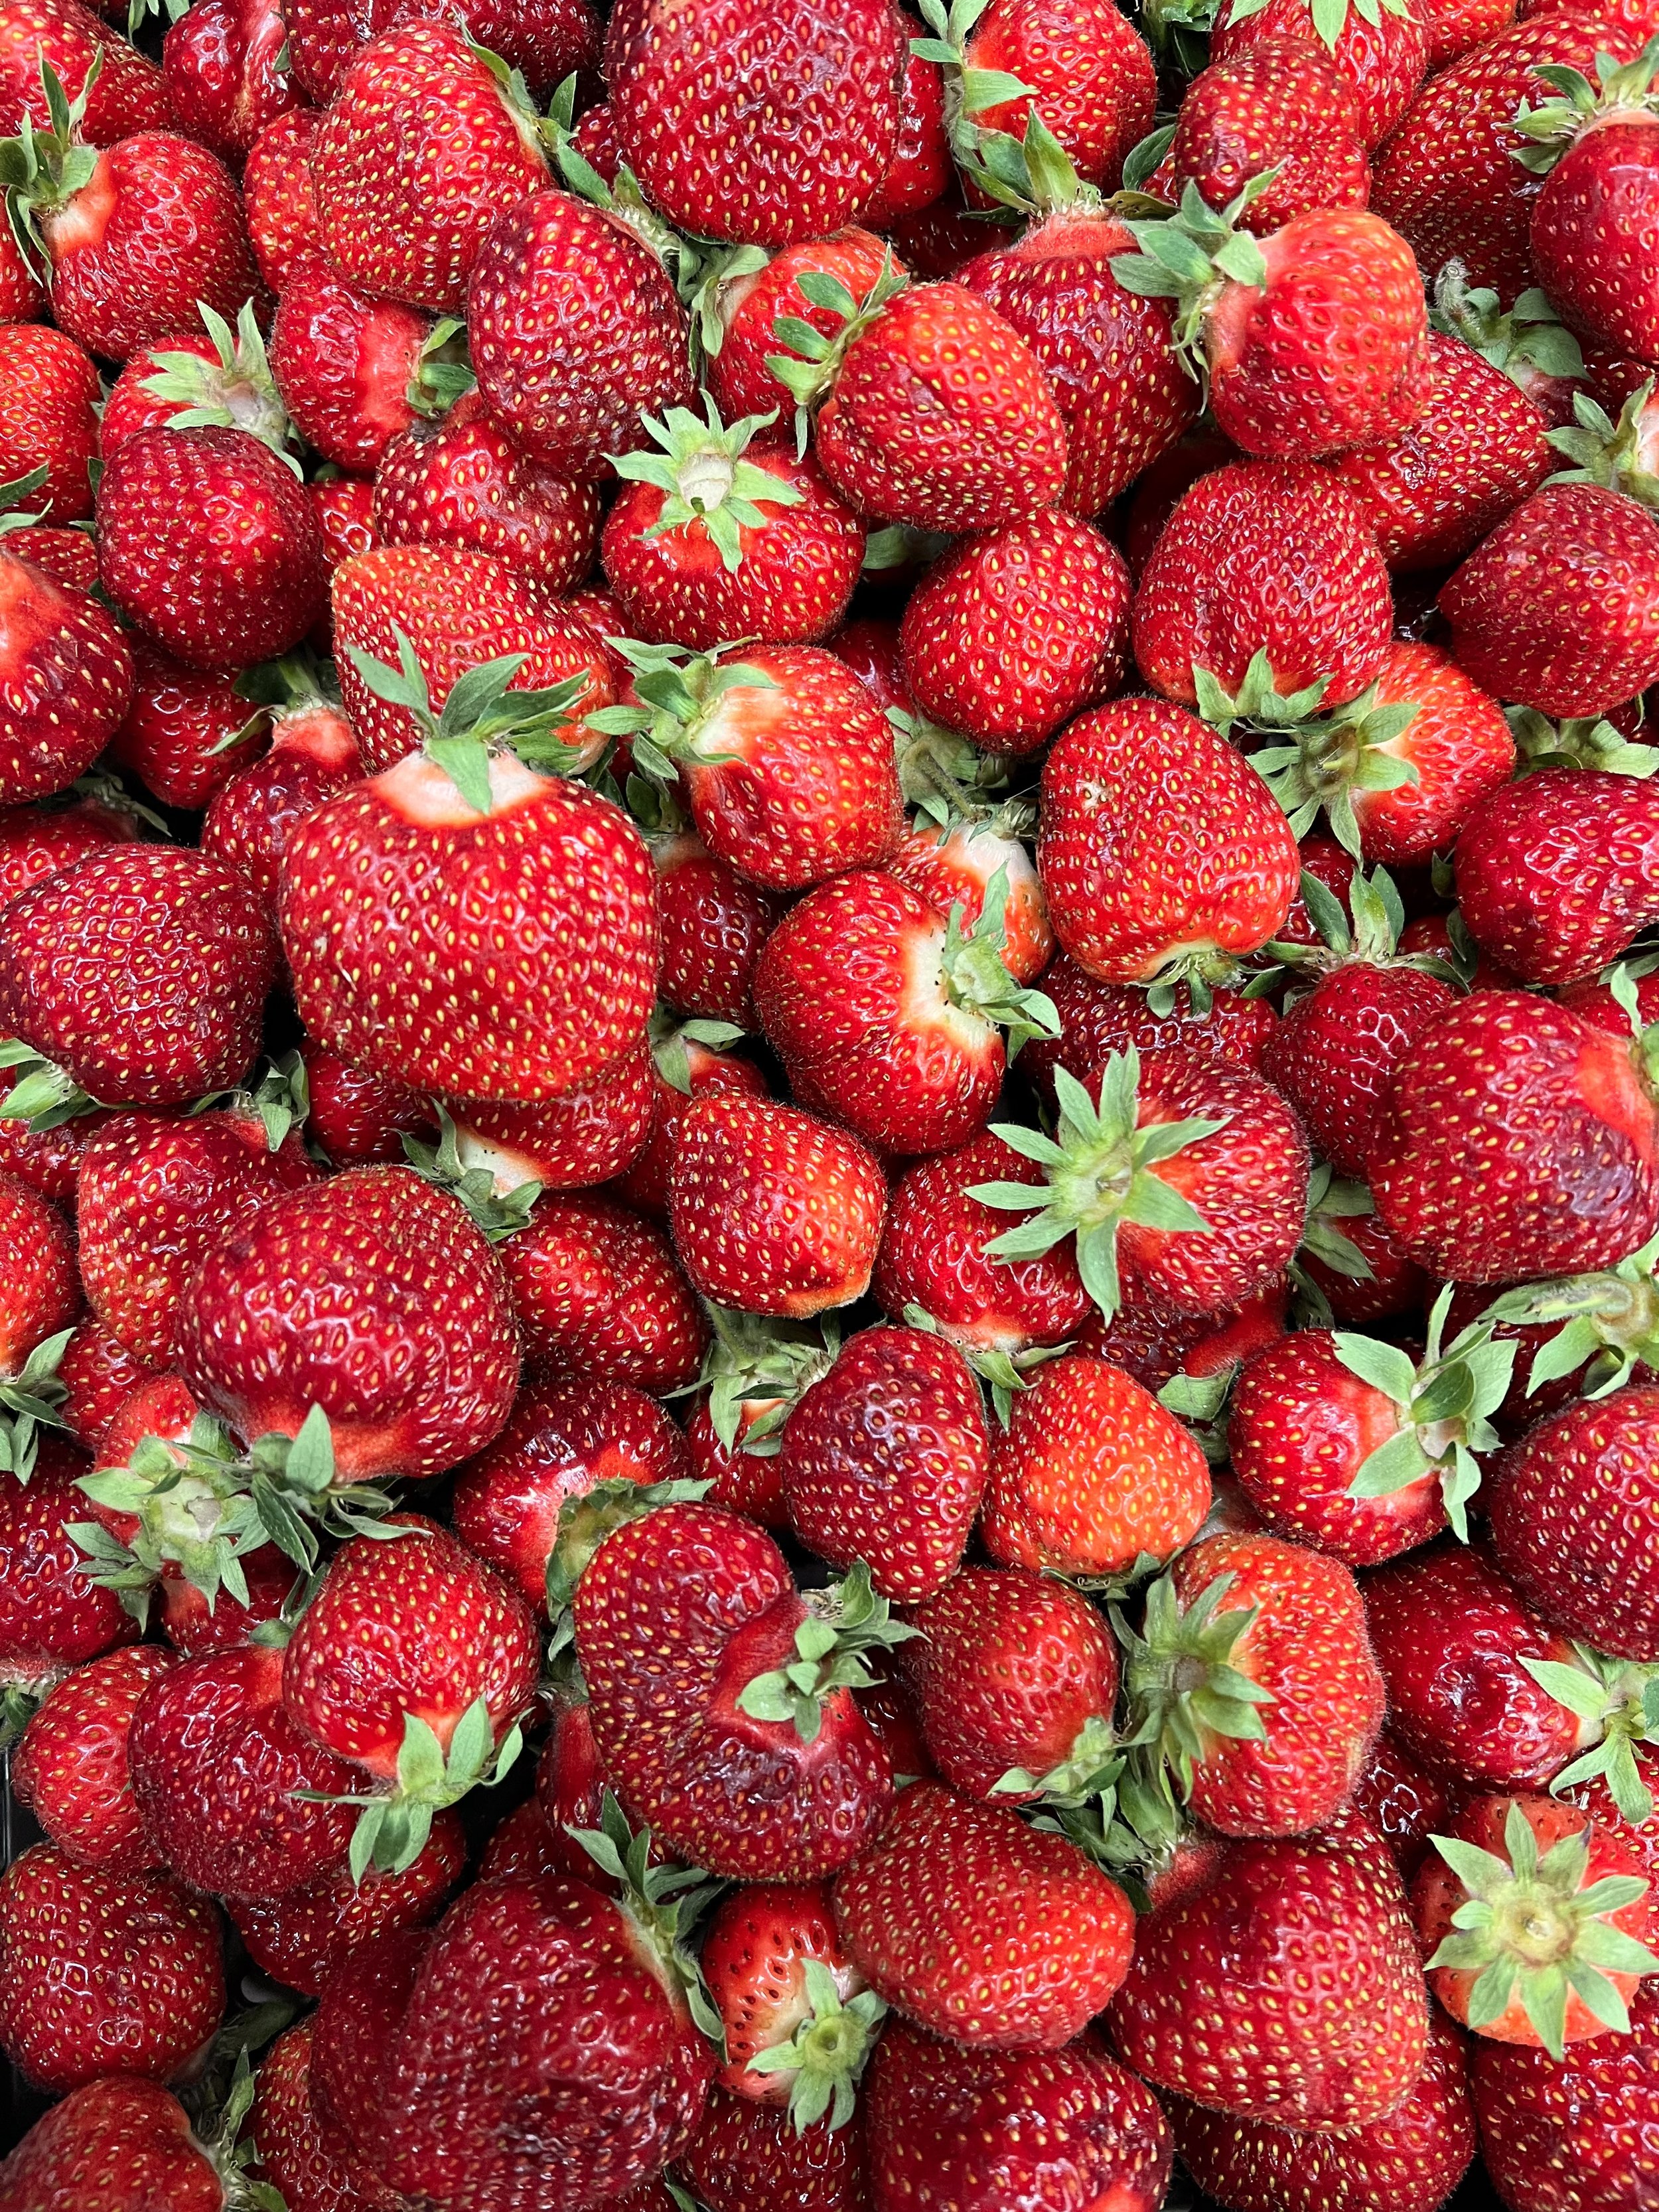 strawberries 2.jpg